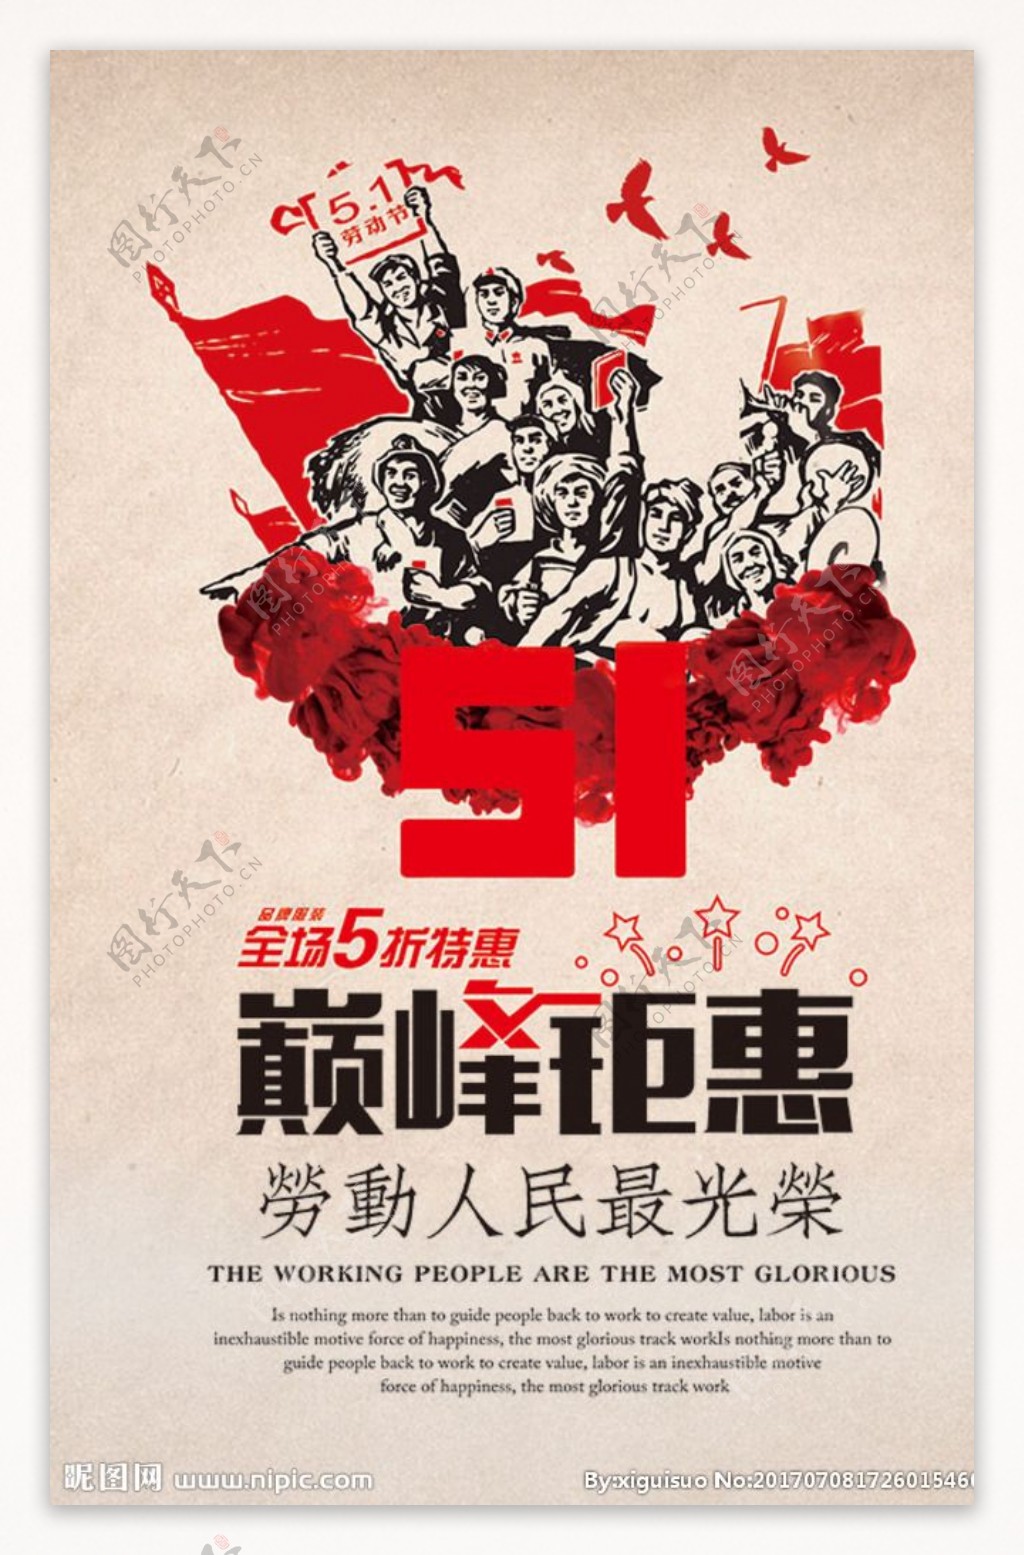 劳动节活动海报